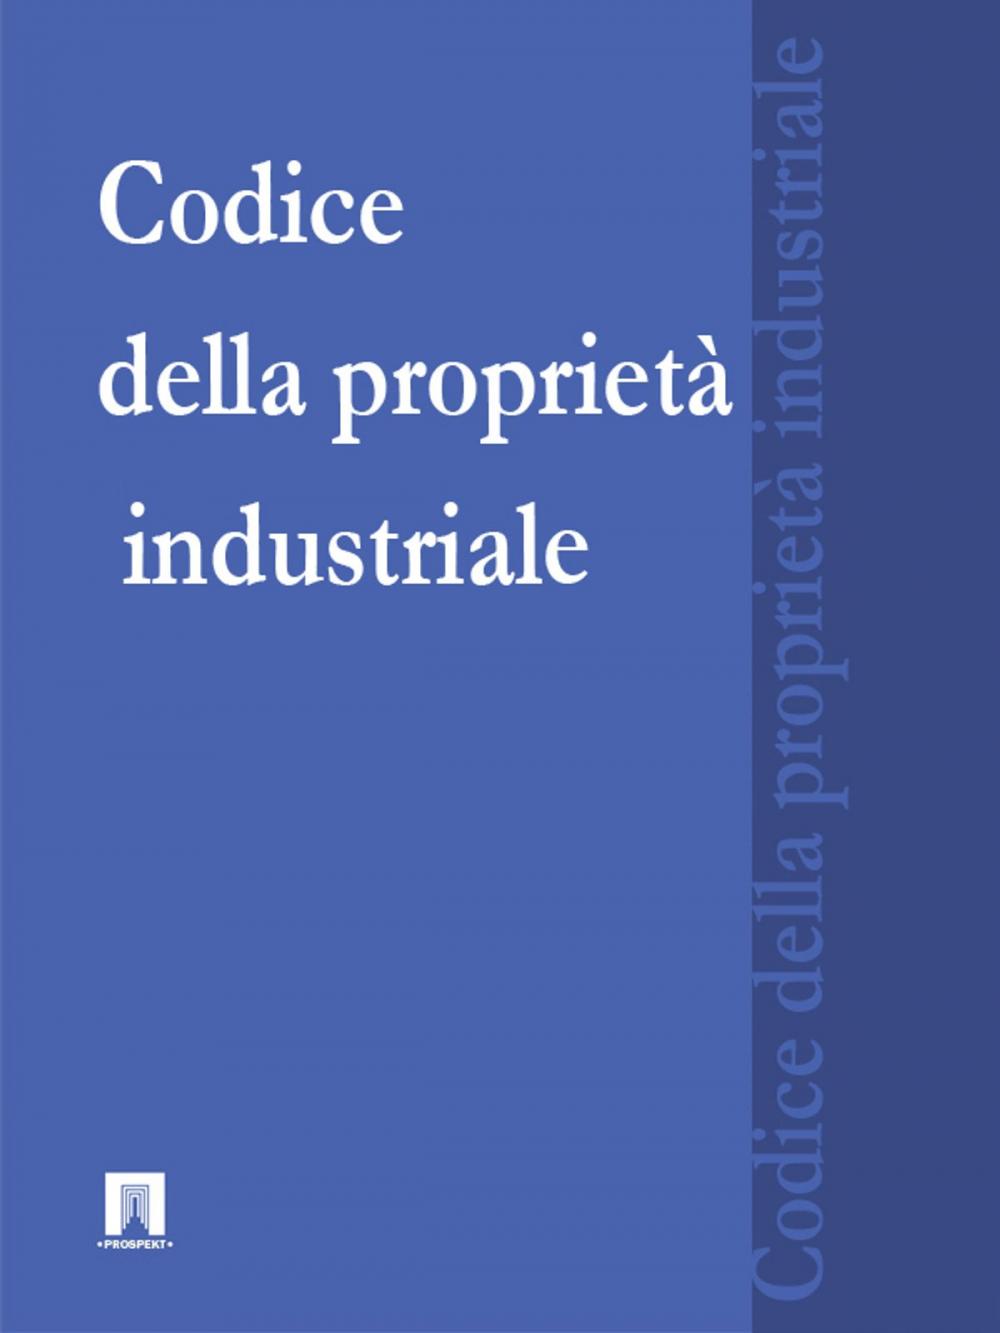 Big bigCover of Codice della proprietà industriale